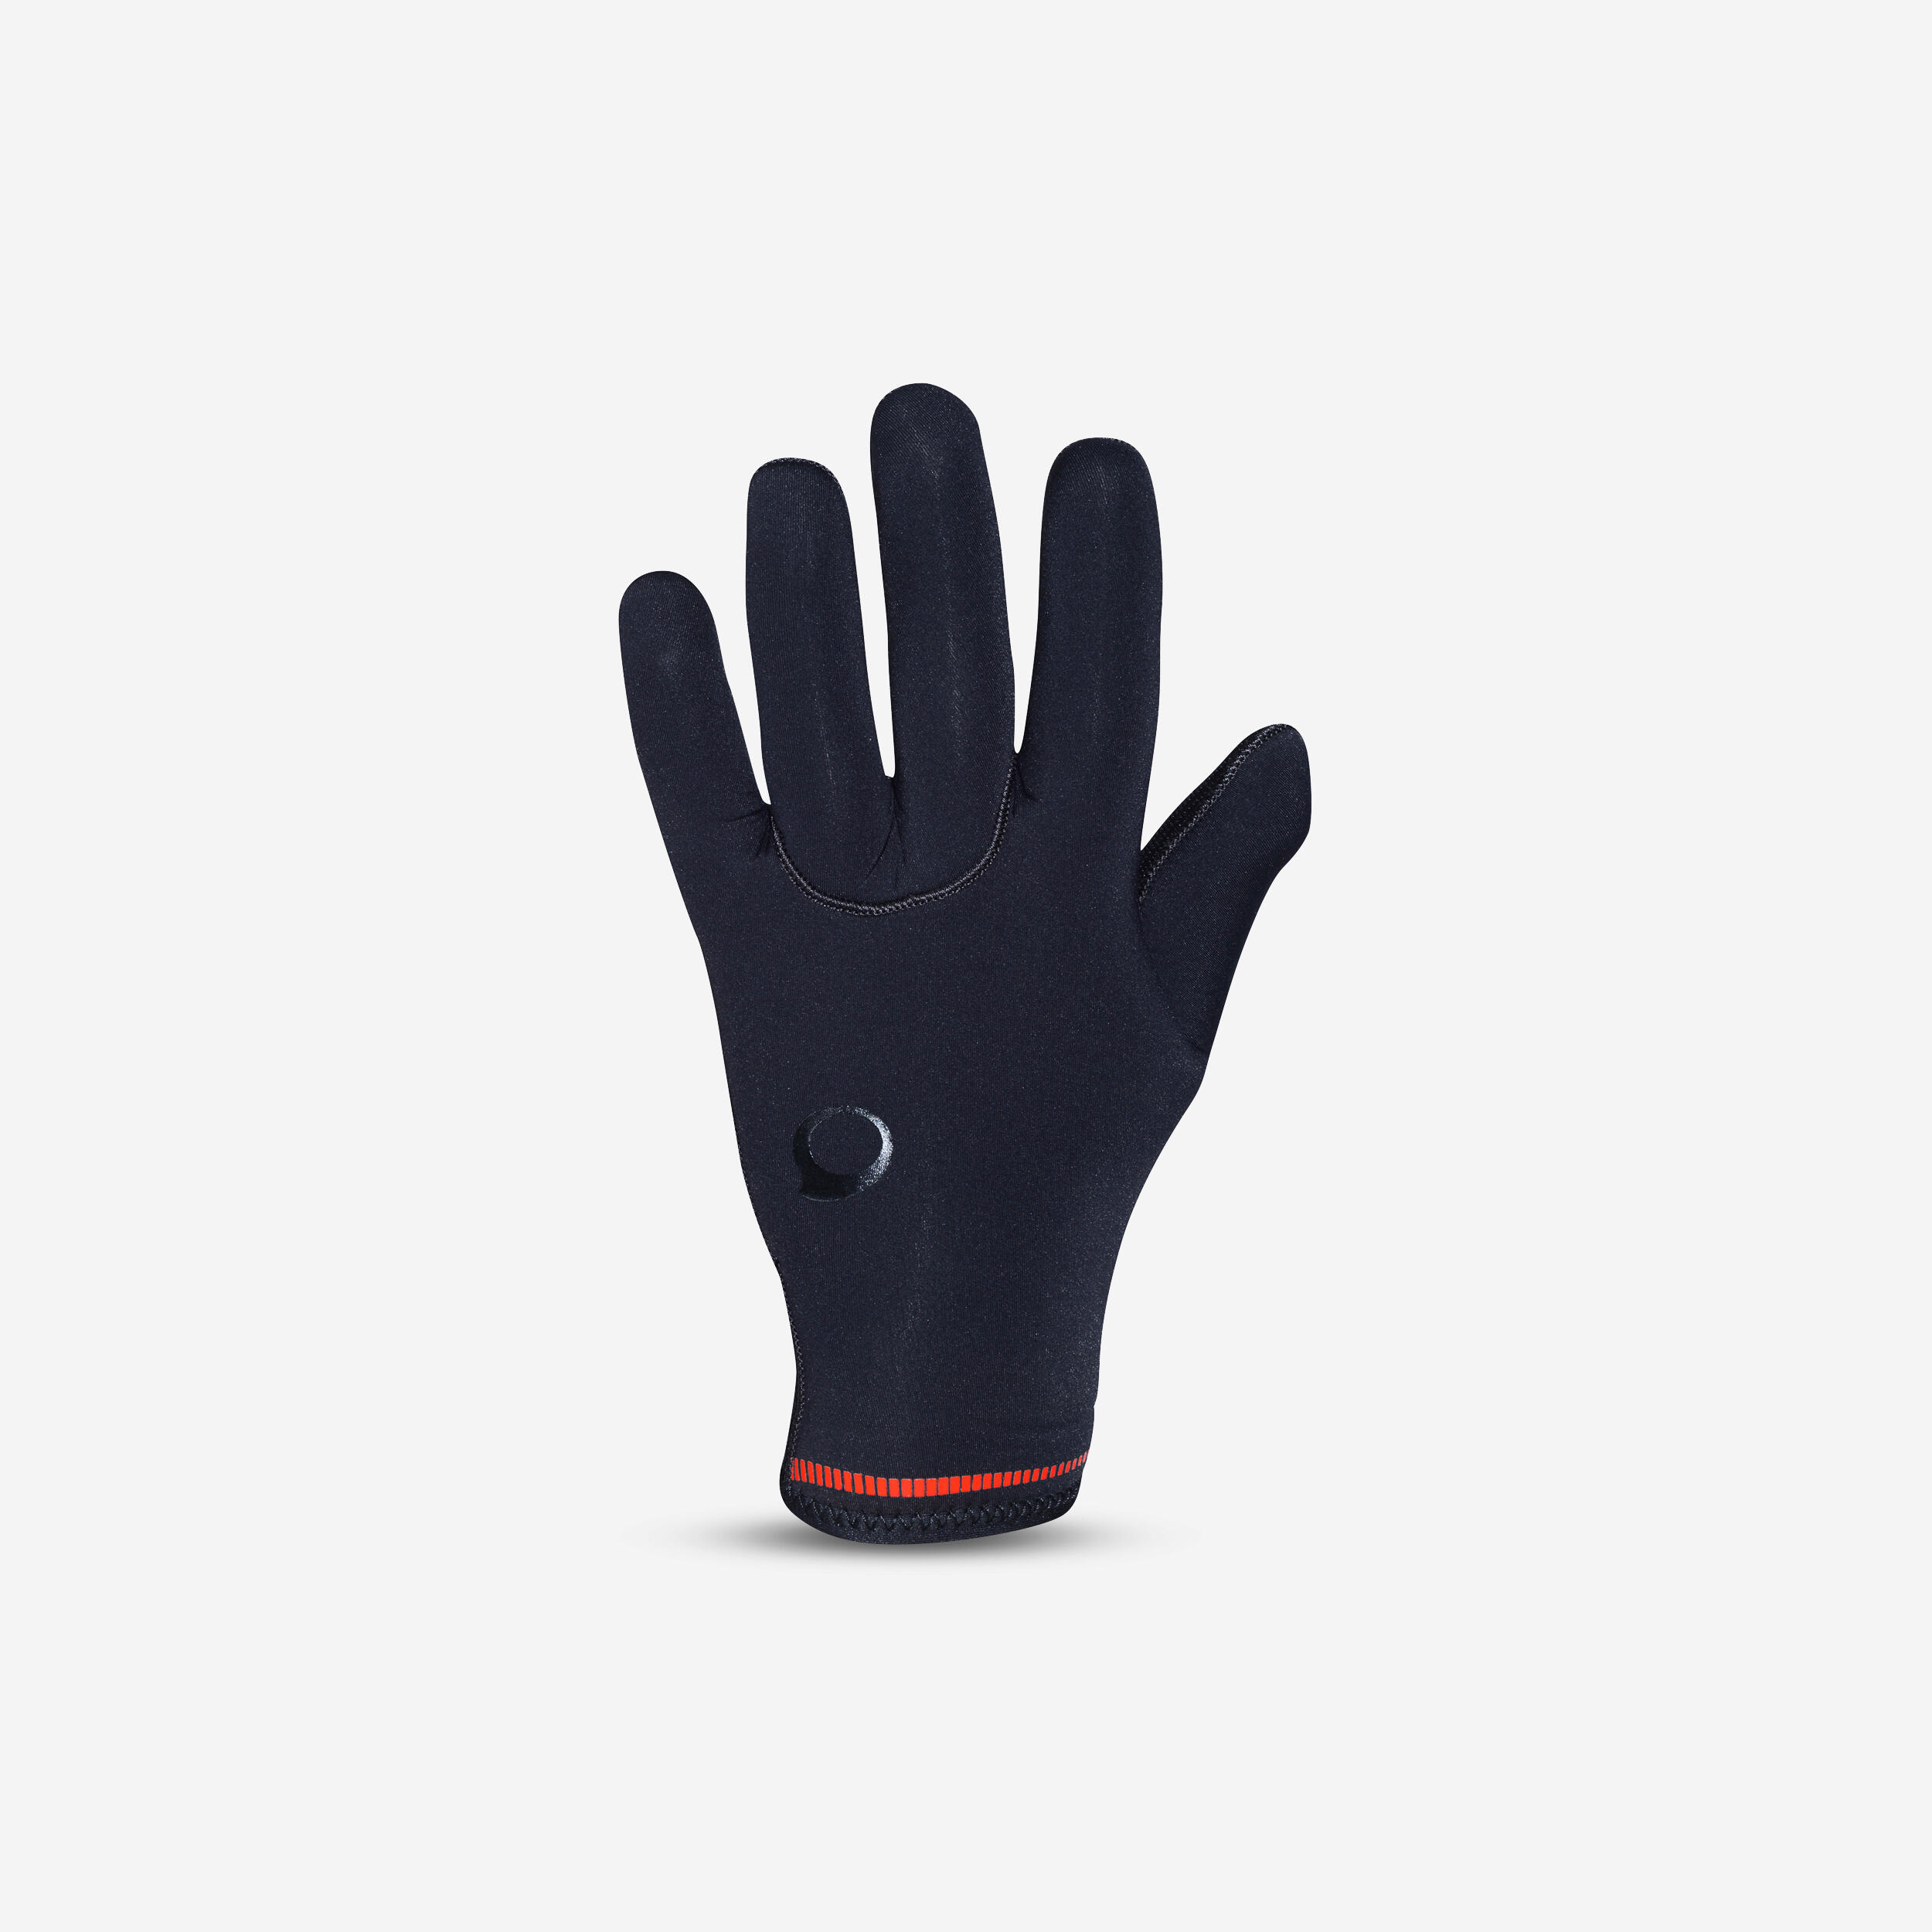 SUBEA Diving gloves 5 mm neoprene black